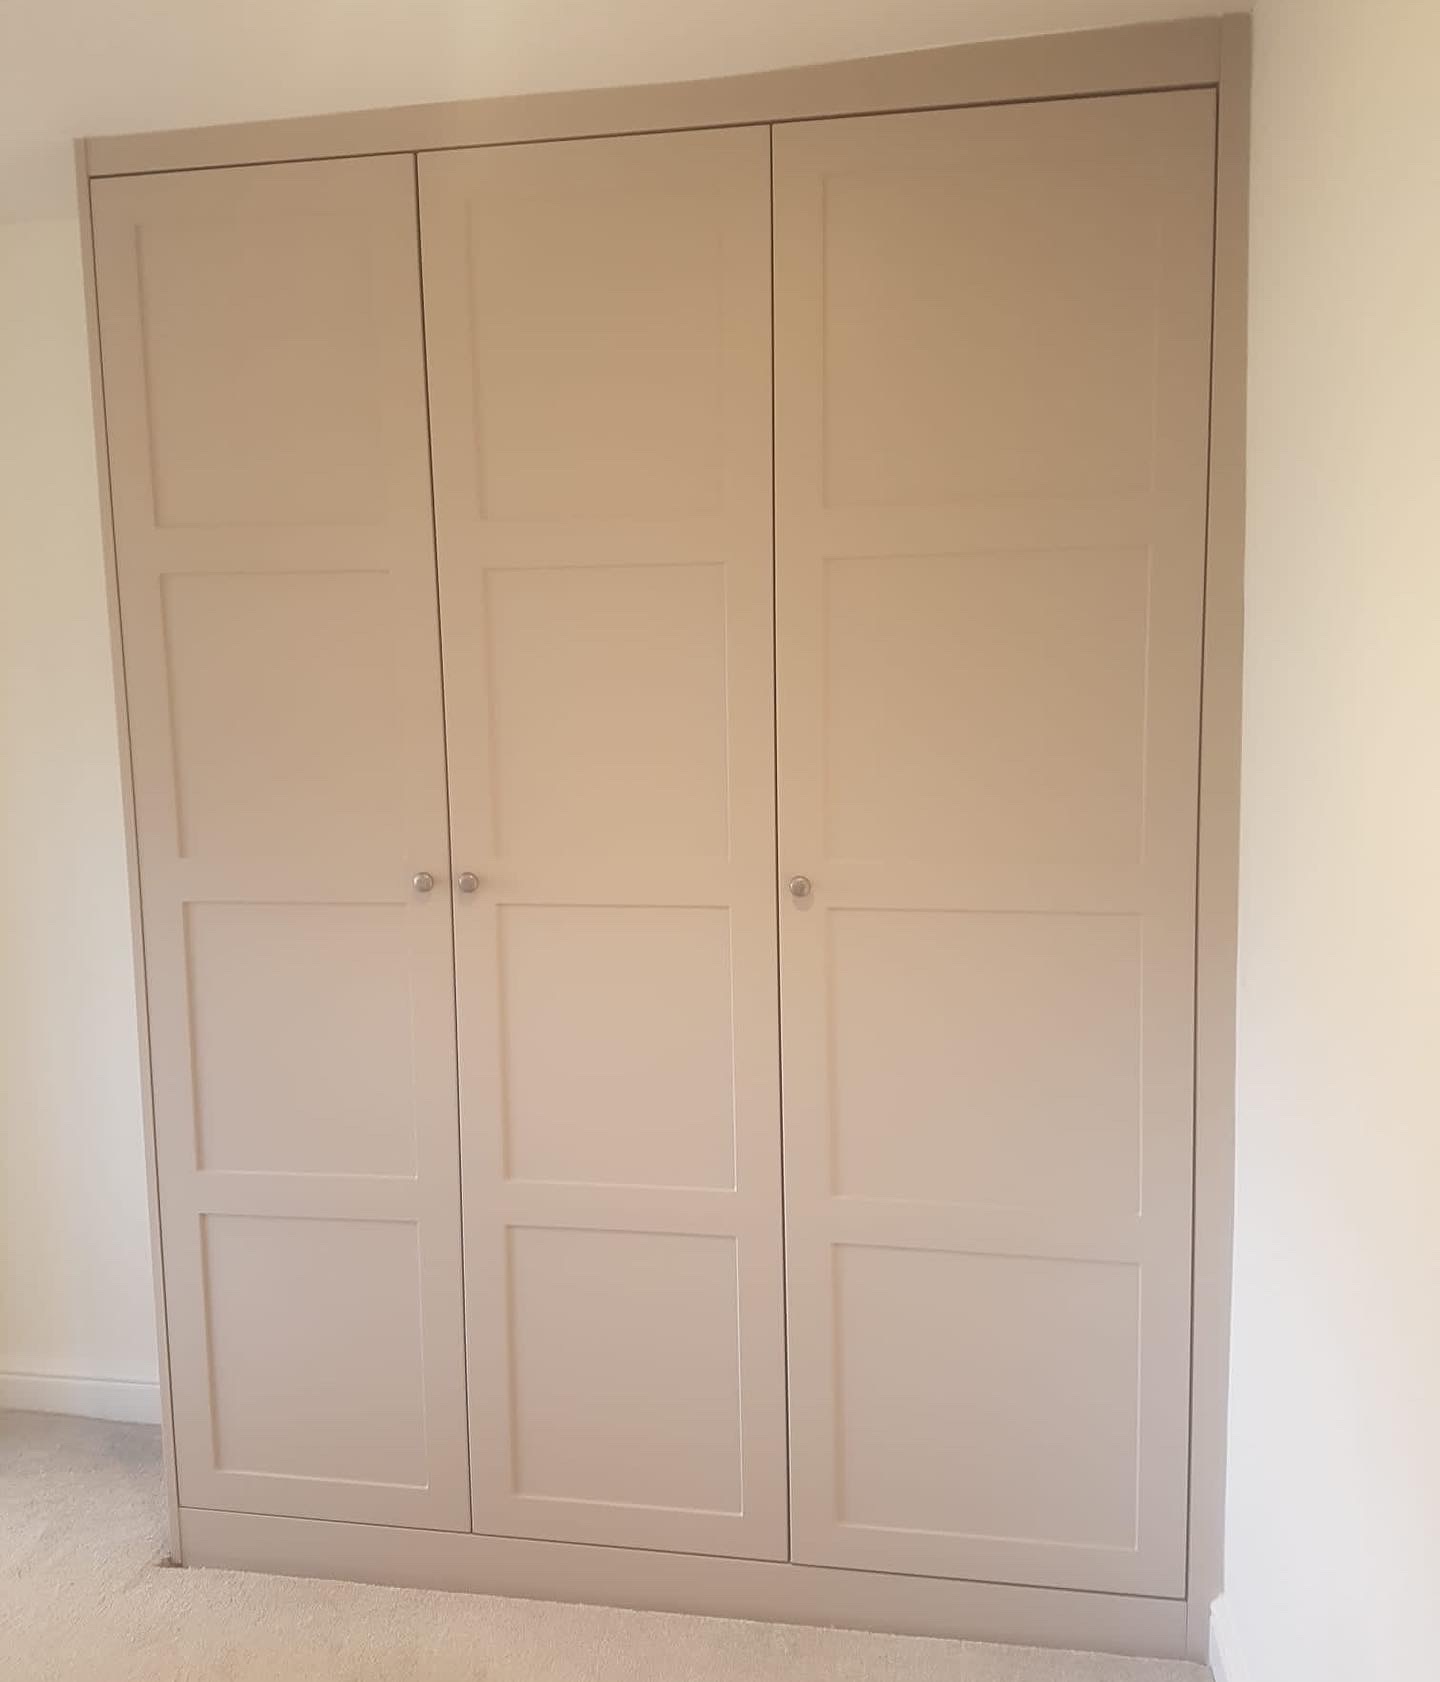 4 Panel shaker bedroom wardrobe